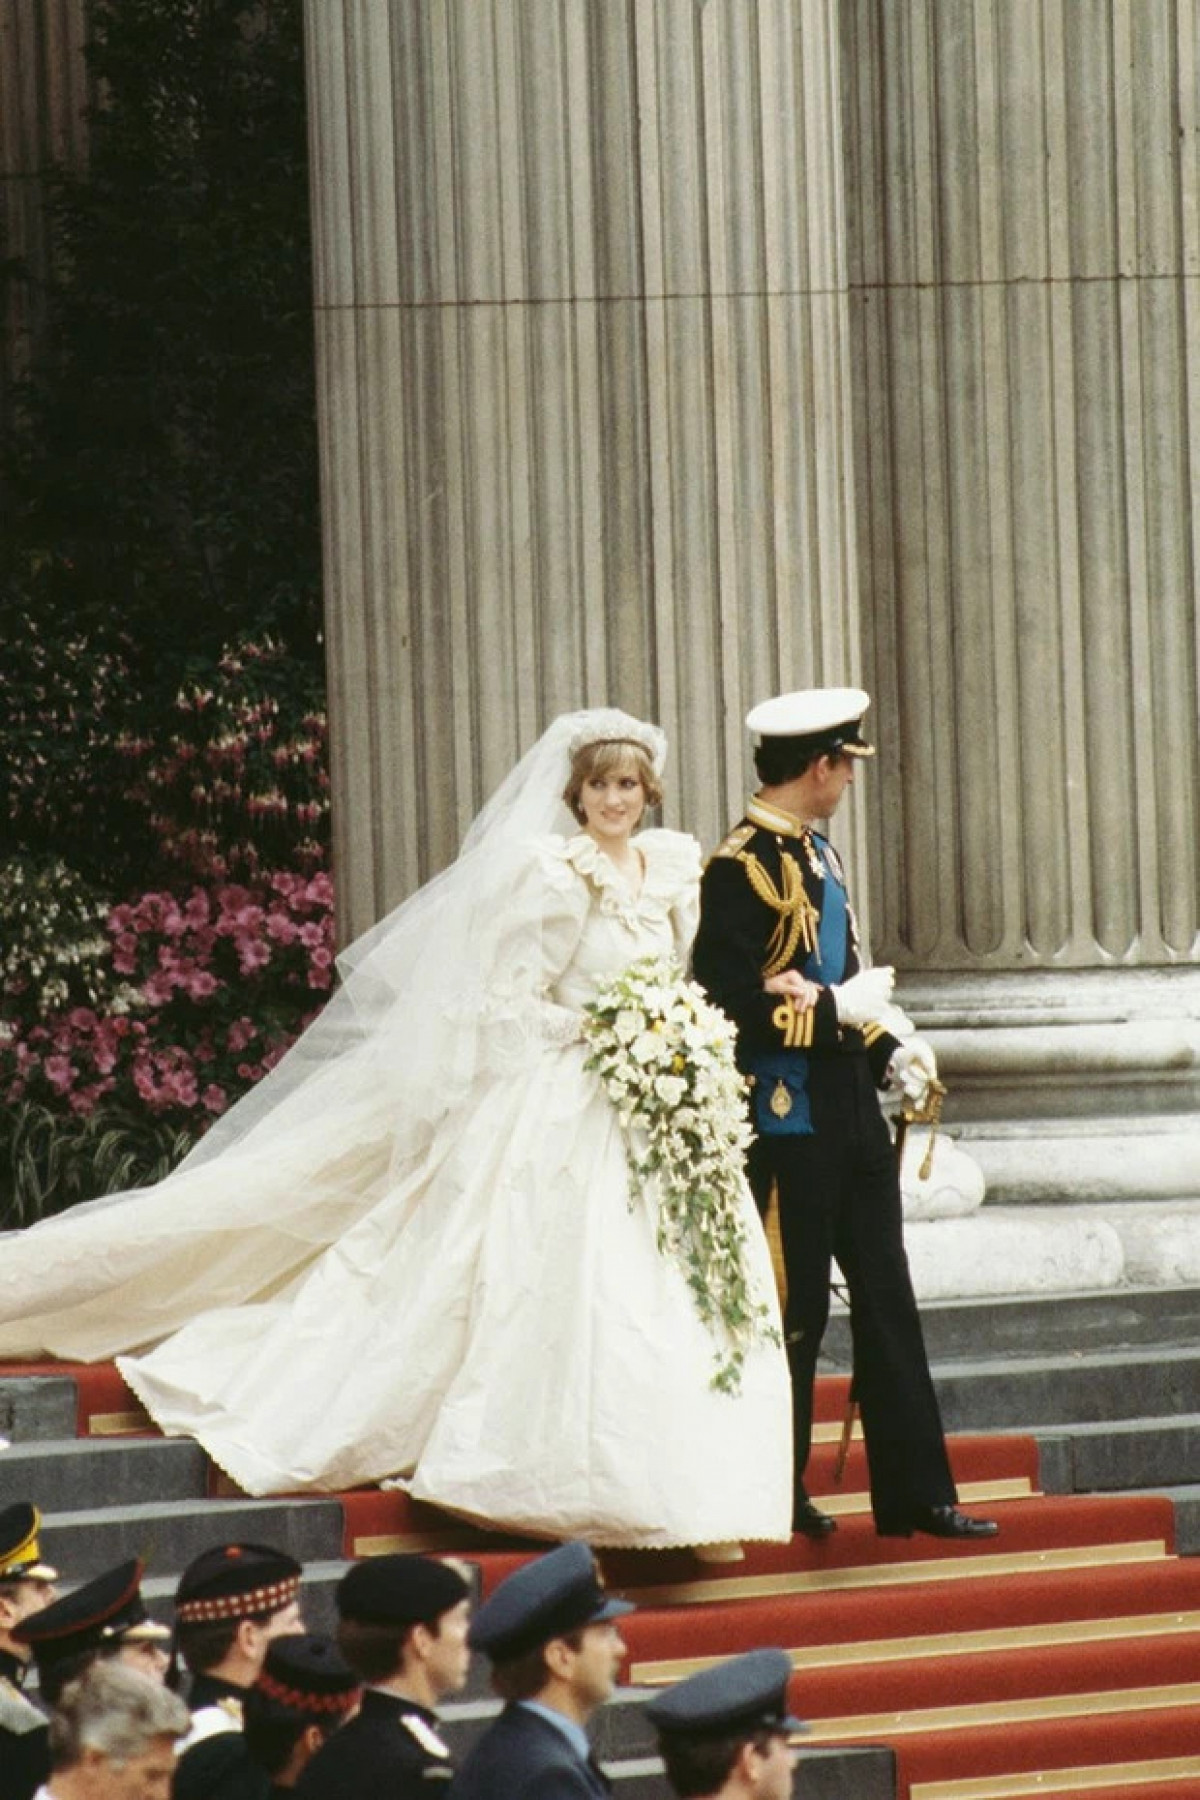 Thiết kế của Công nương Diana từ năm 1981 đã trở thành biểu tượng của thời trang váy cưới.